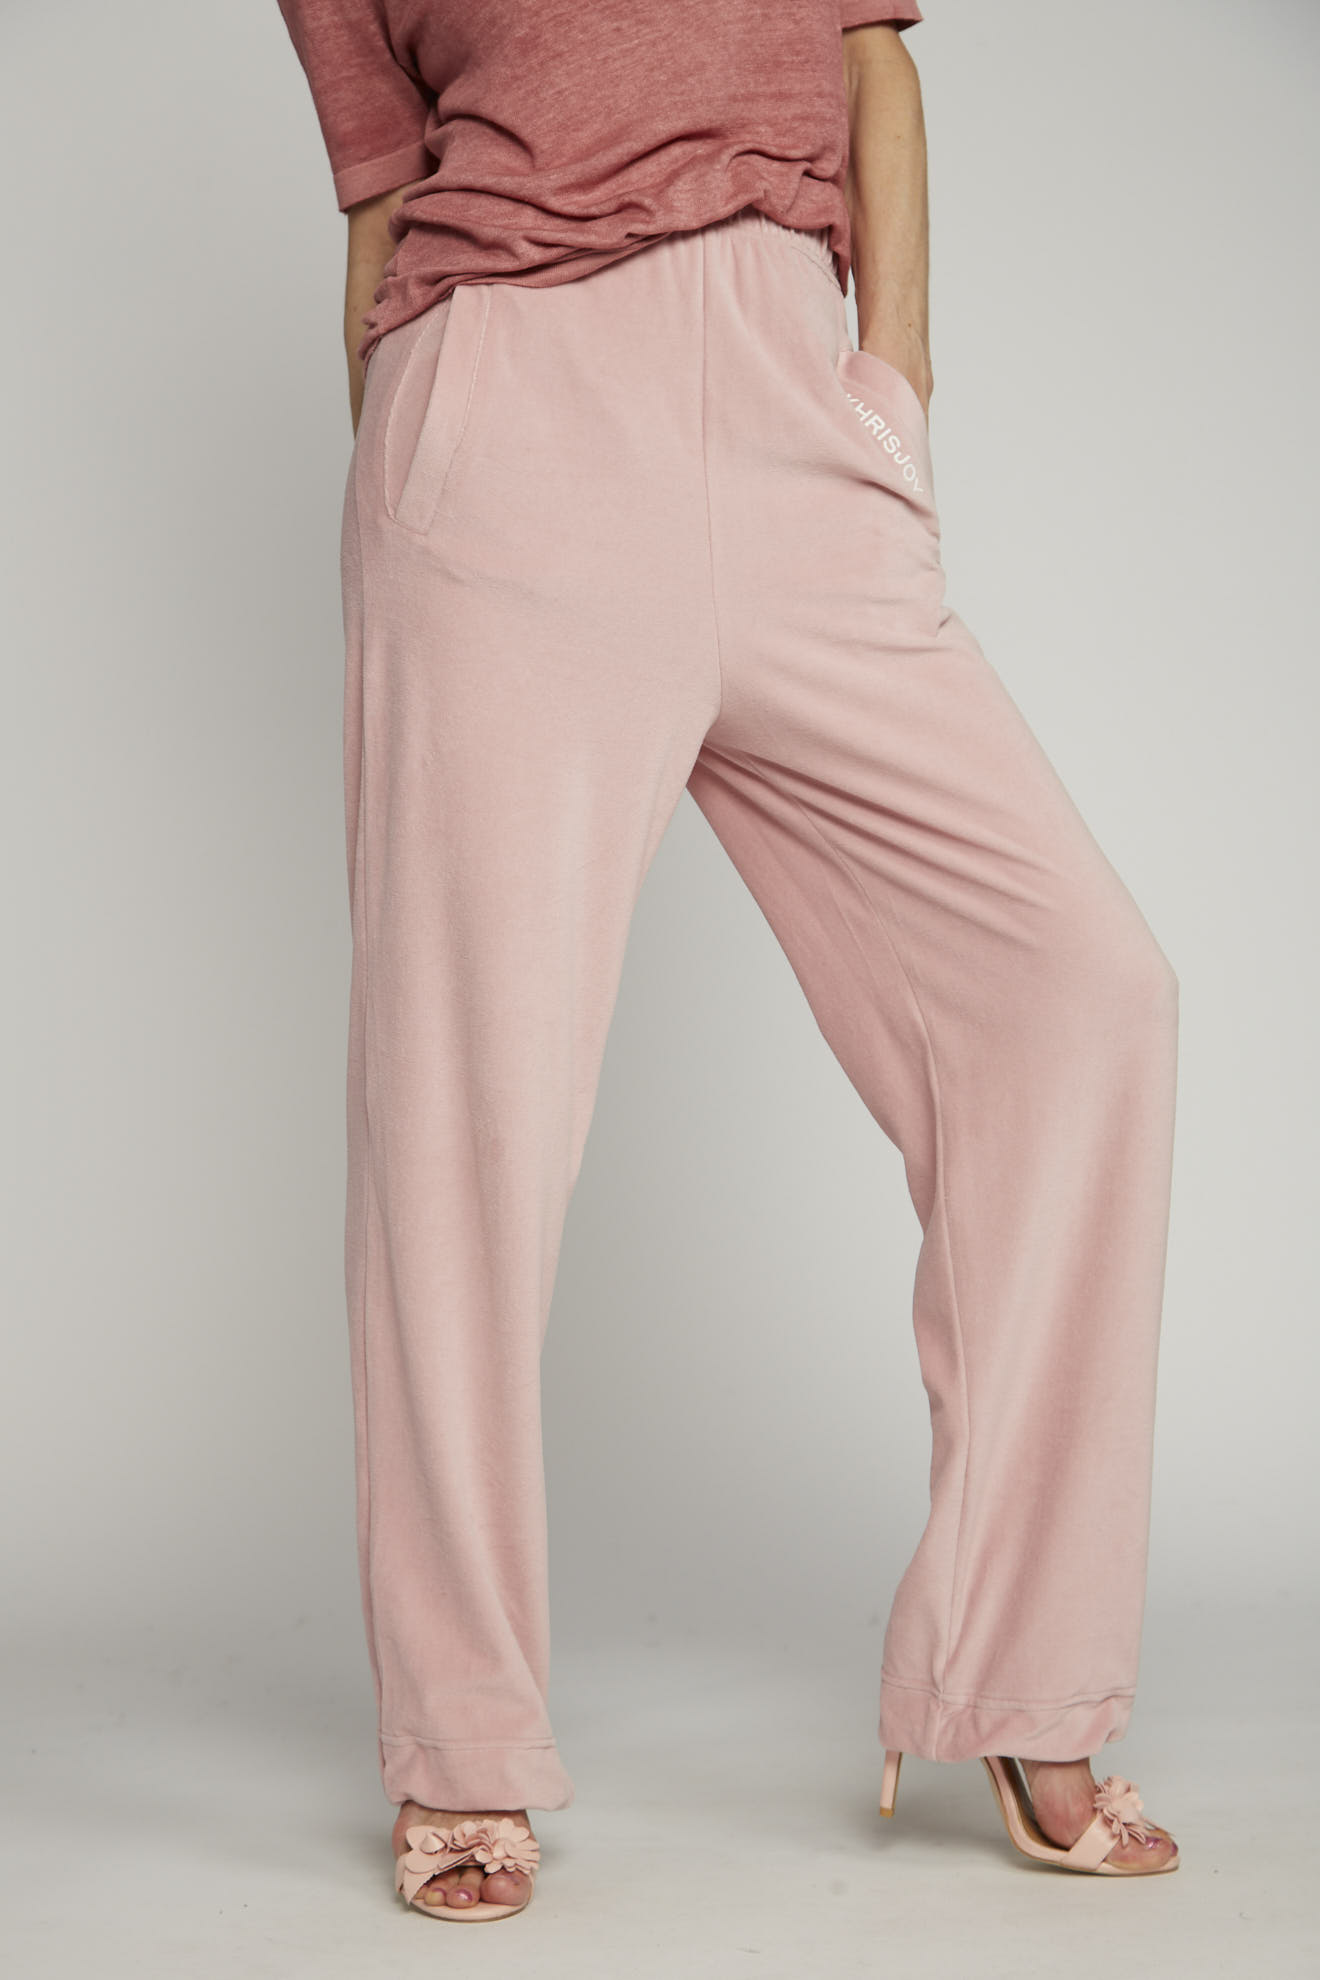 khrisjoy pants rosé plain cotton model front